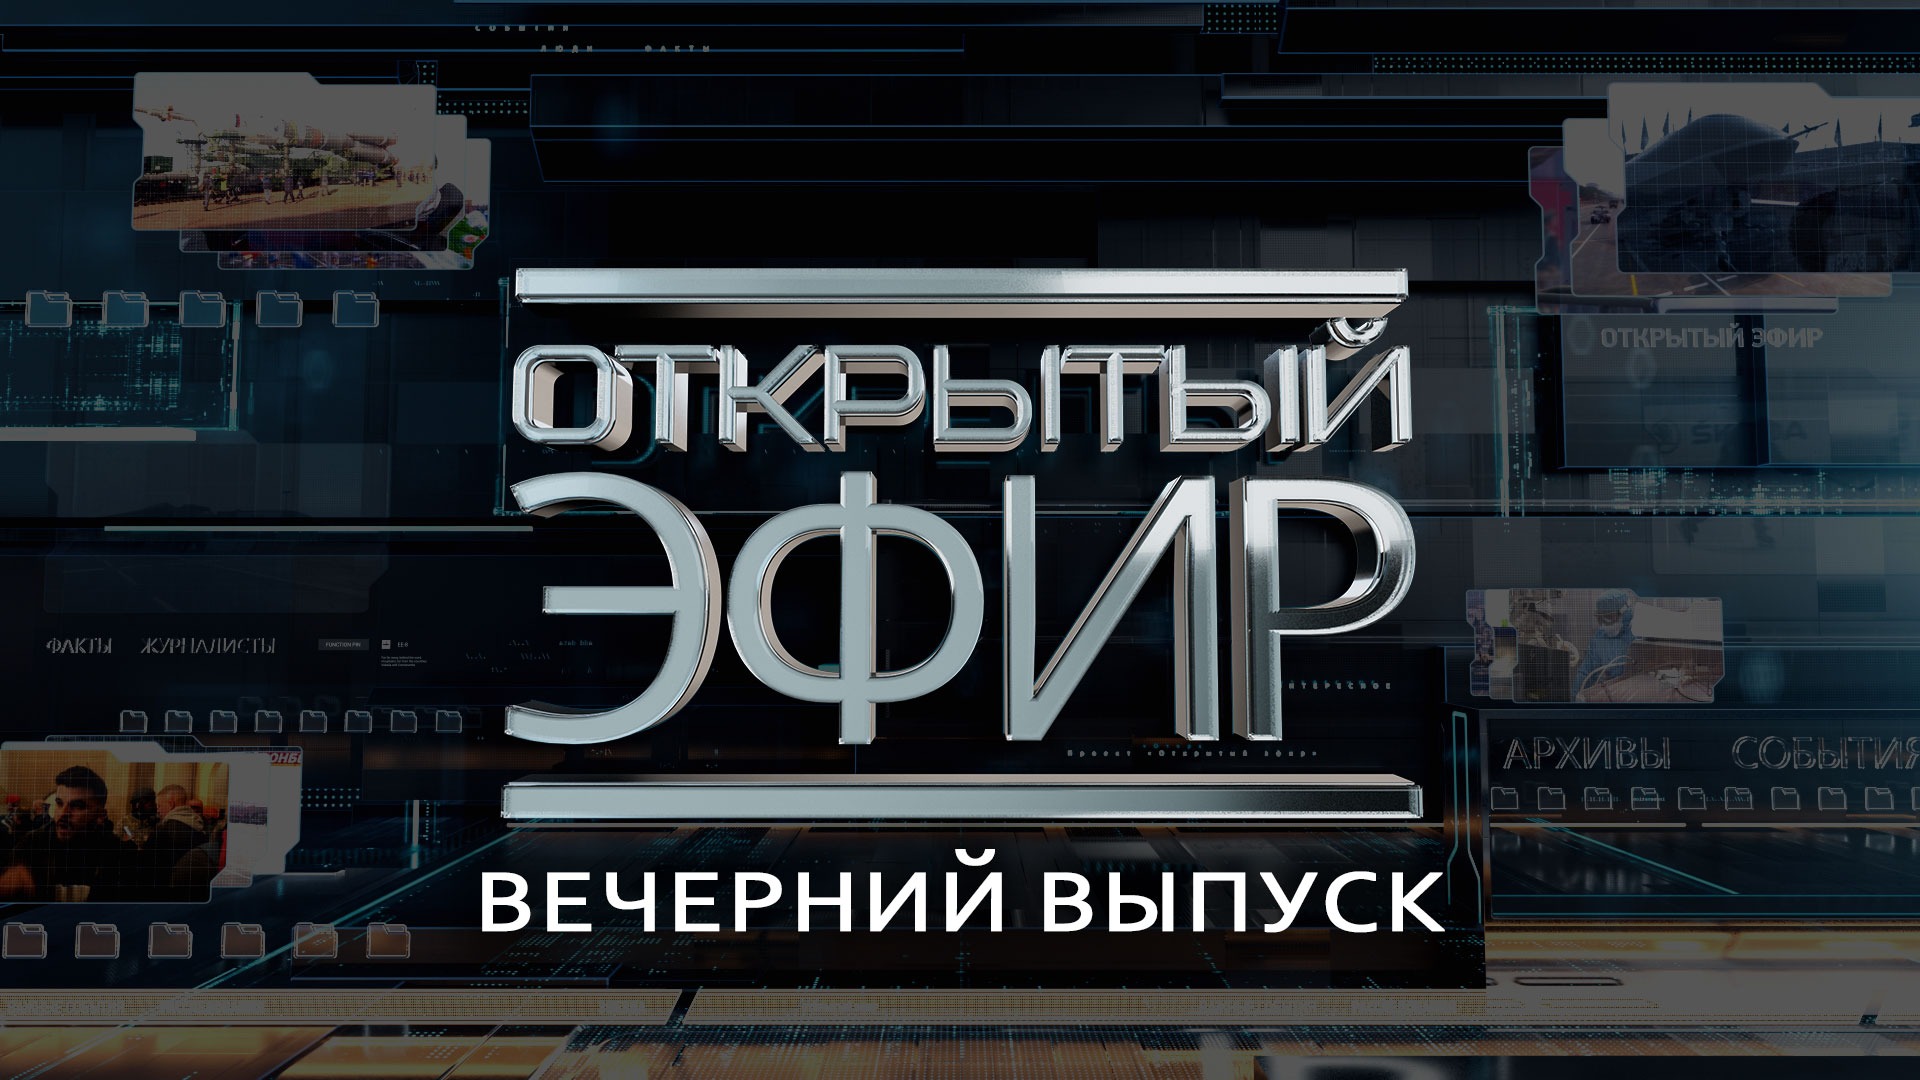 "Открытый эфир" о специальной военной операции в Донбассе. День 421